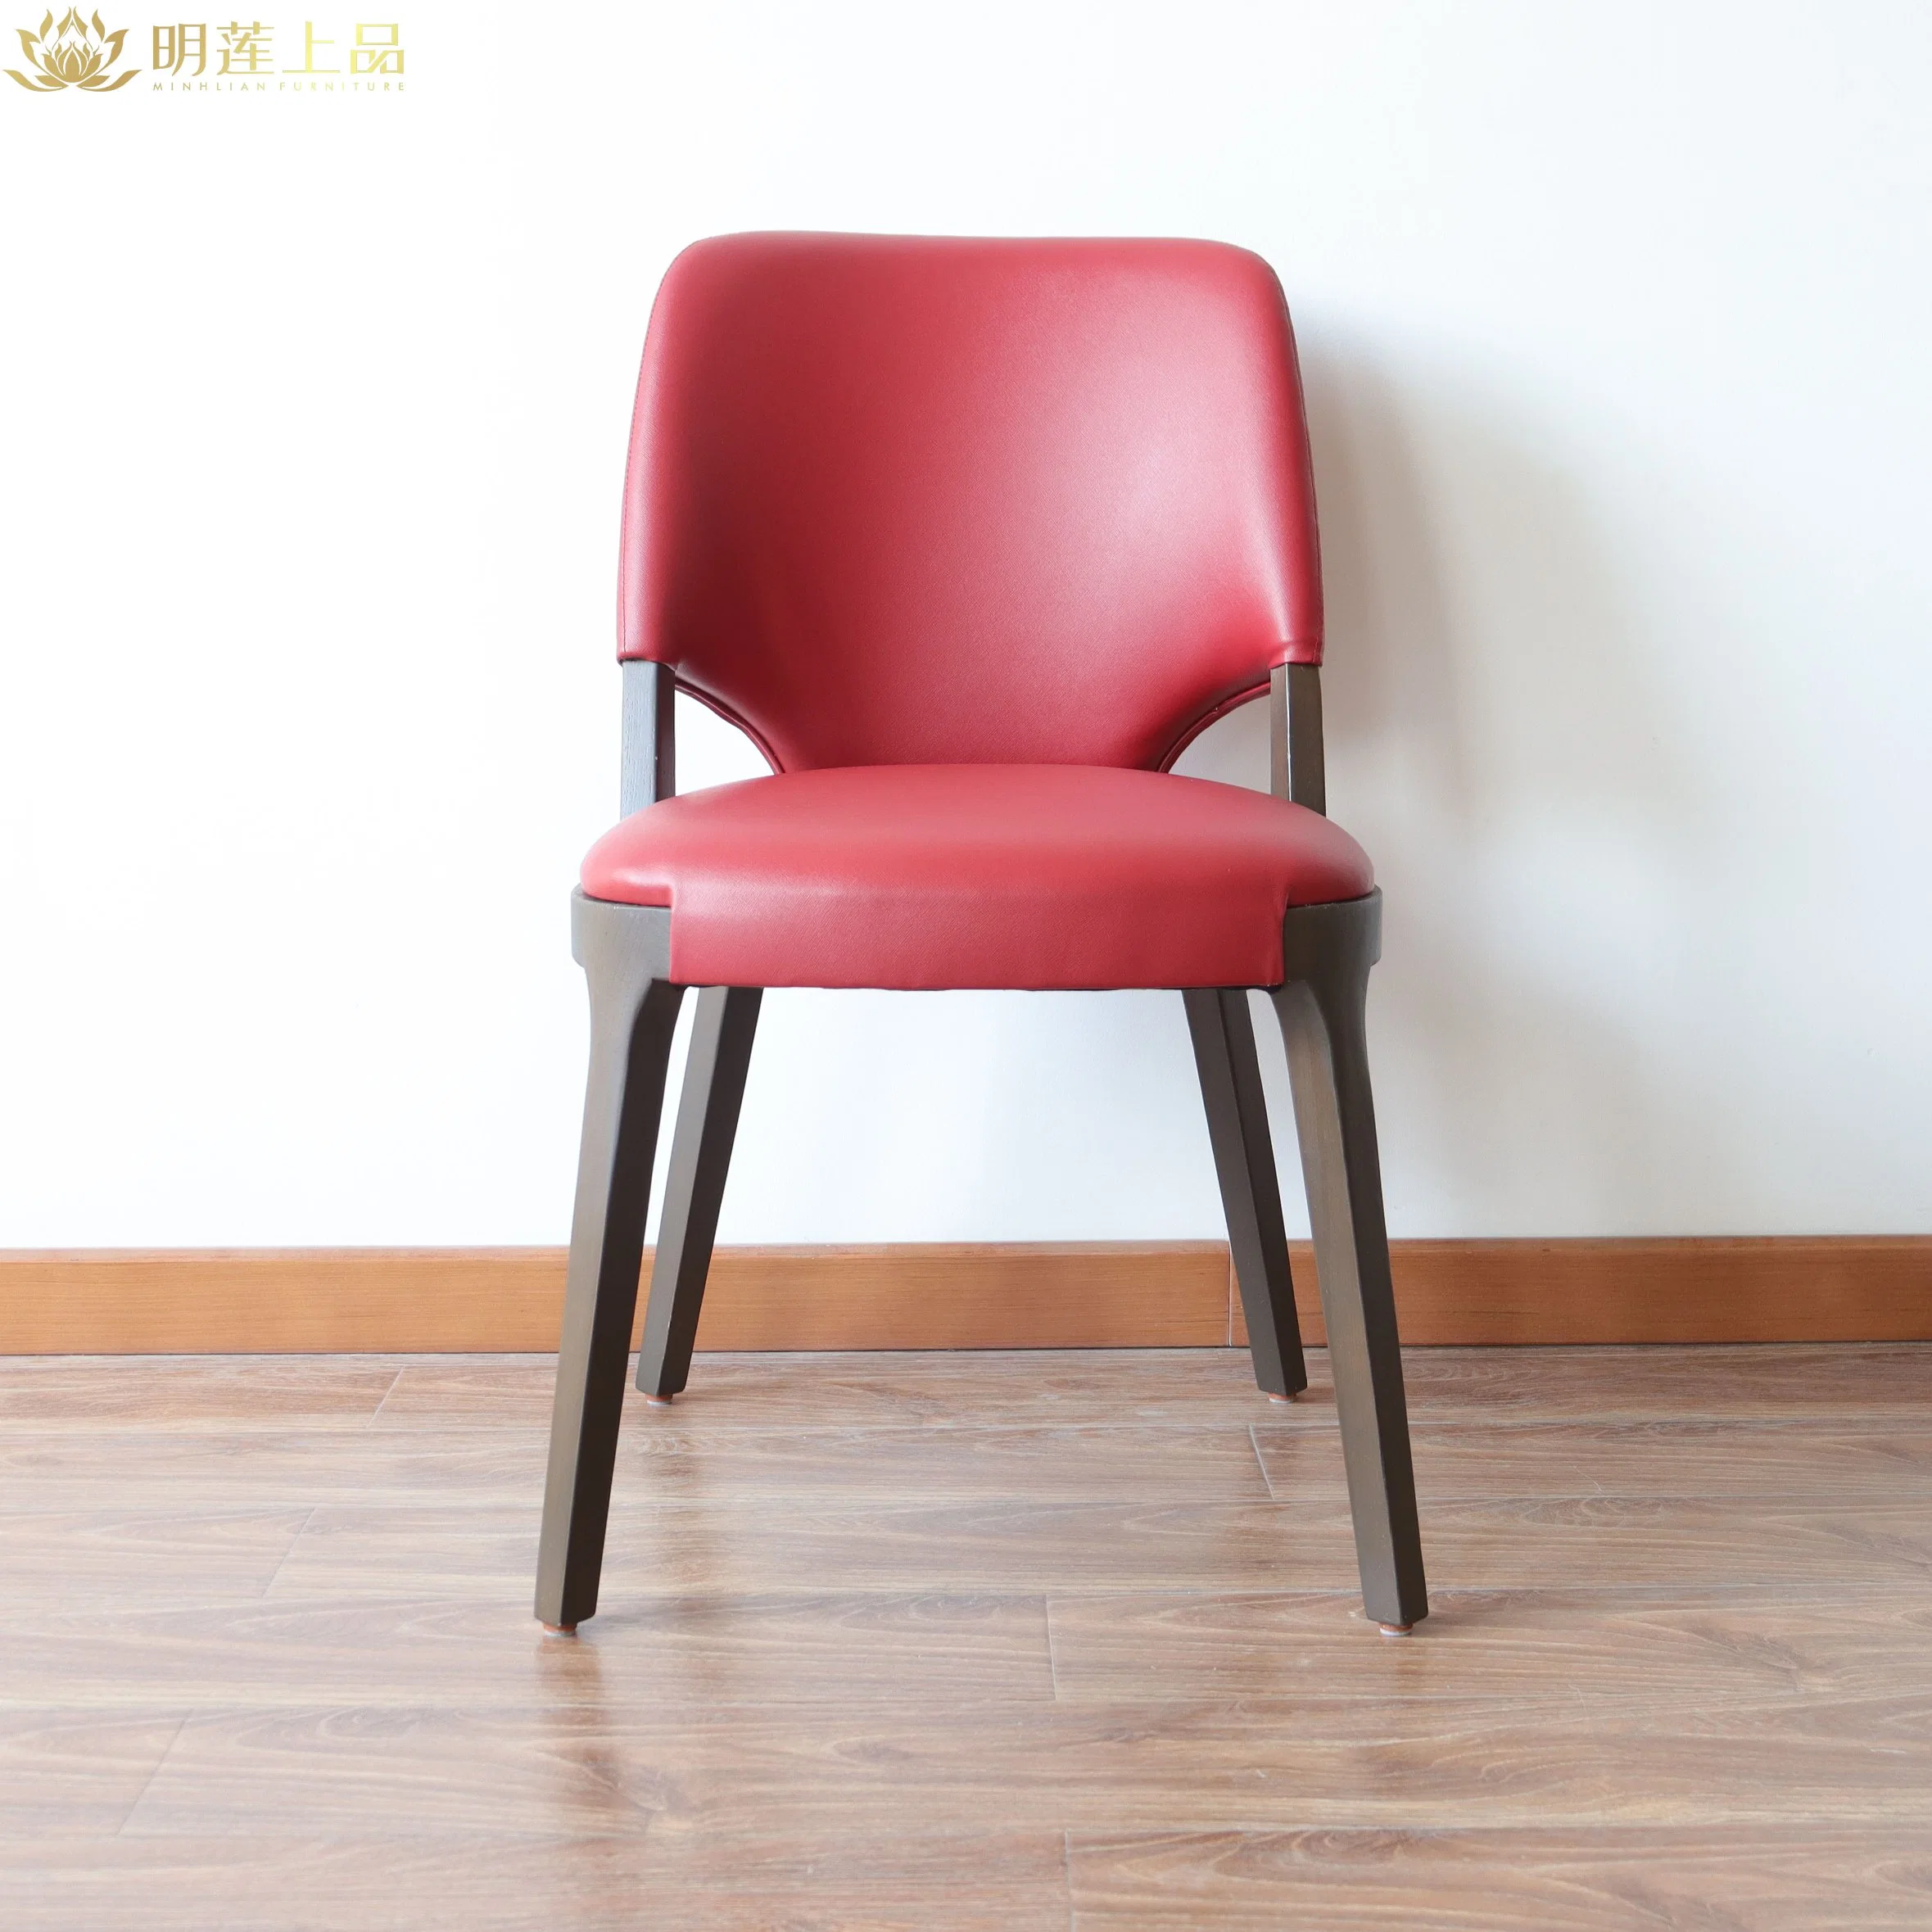 Salle à manger avec chaise de restaurant en cuir rouge et revêtement en polyuréthane de style moderne Meubles mobilier de maison chaise en bois massif